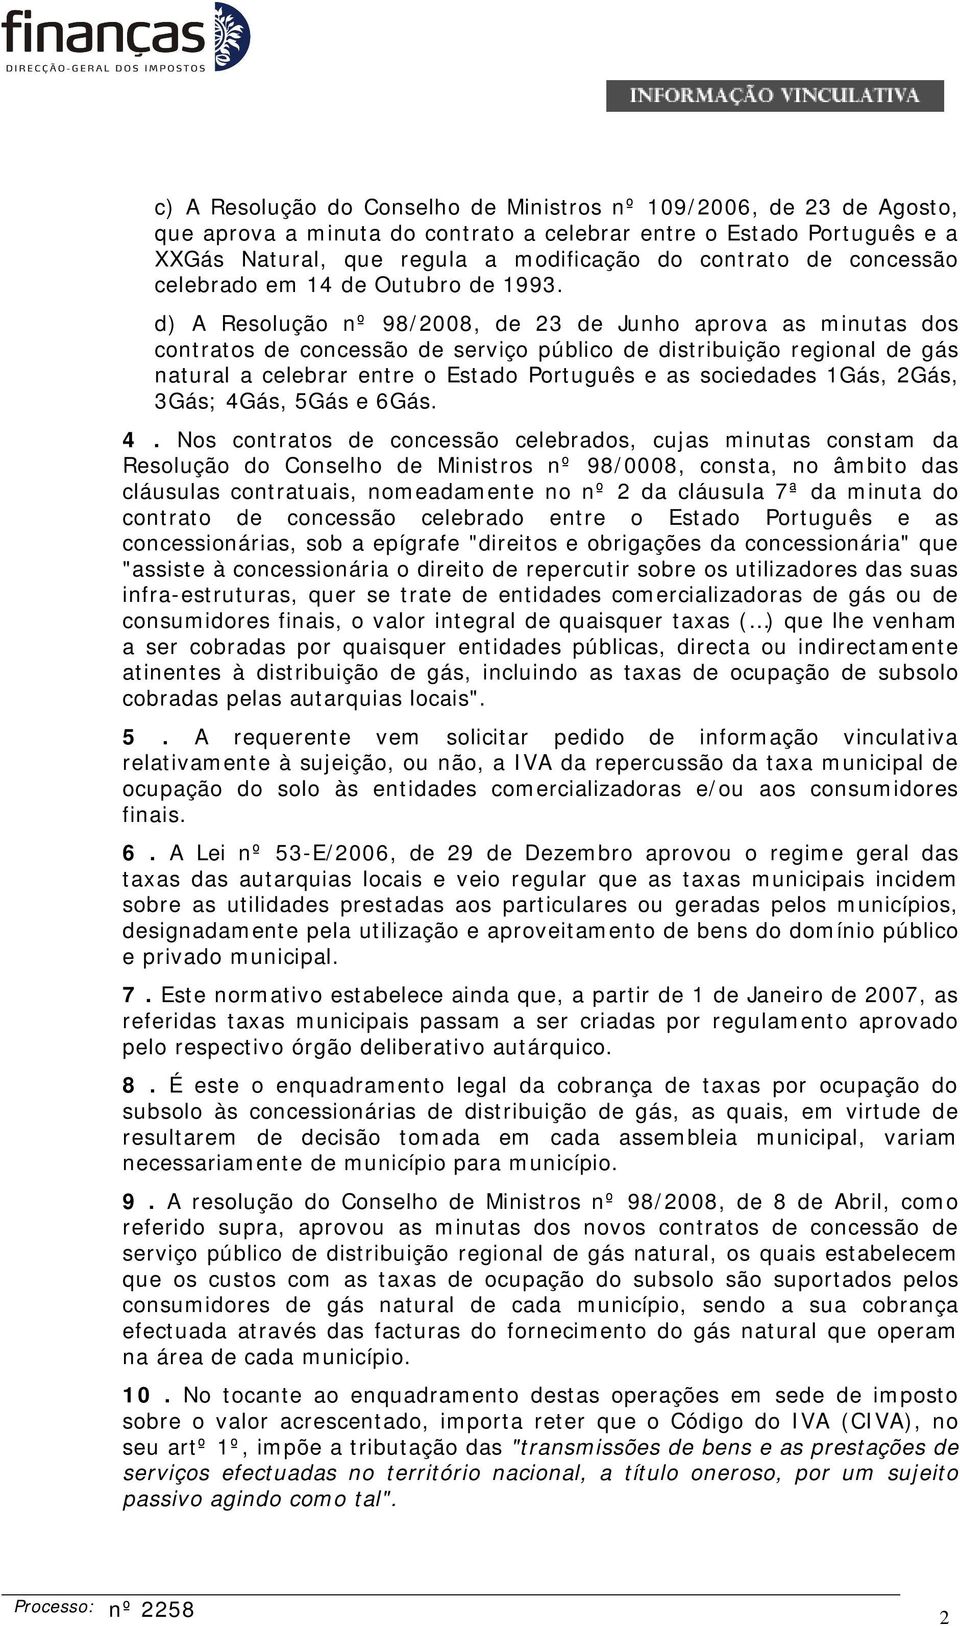 d) A Resolução nº 98/2008, de 23 de Junho aprova as minutas dos contratos de concessão de serviço público de distribuição regional de gás natural a celebrar entre o Estado Português e as sociedades